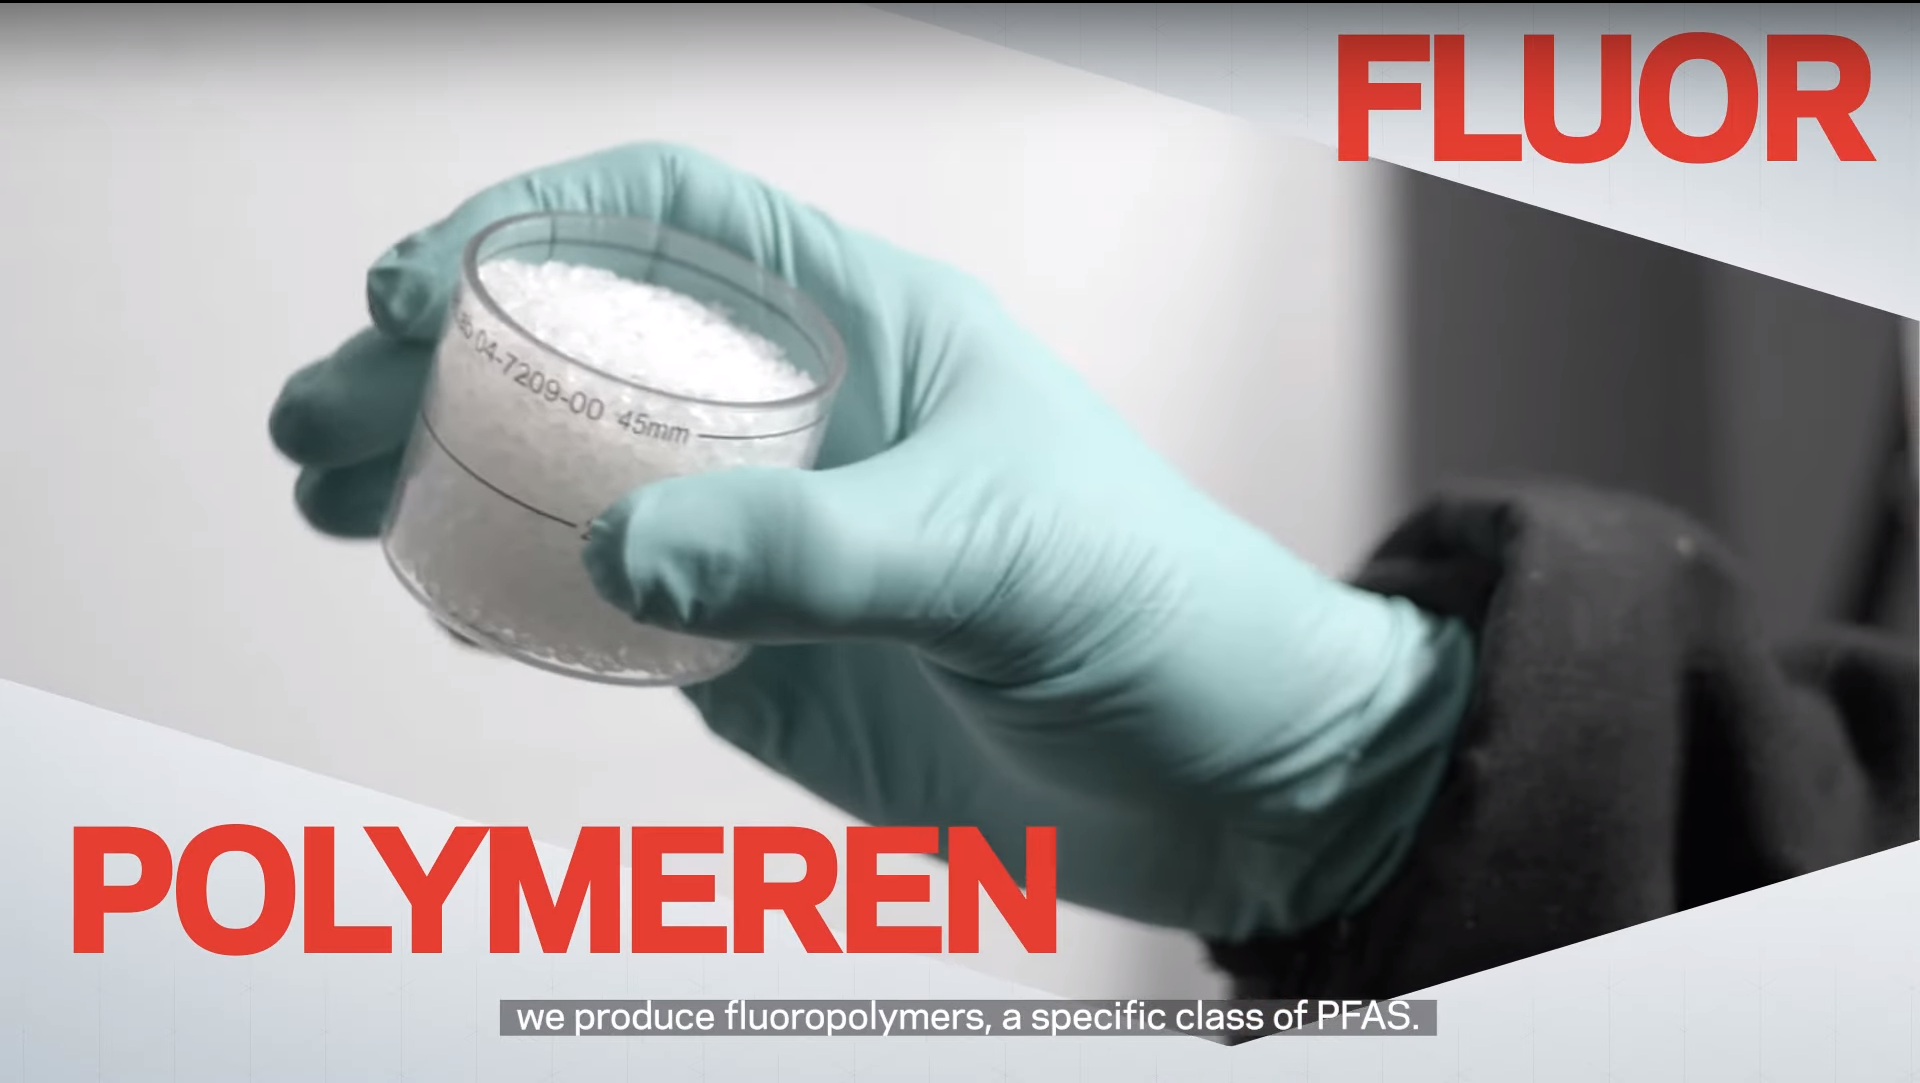 Polymeren Fluor